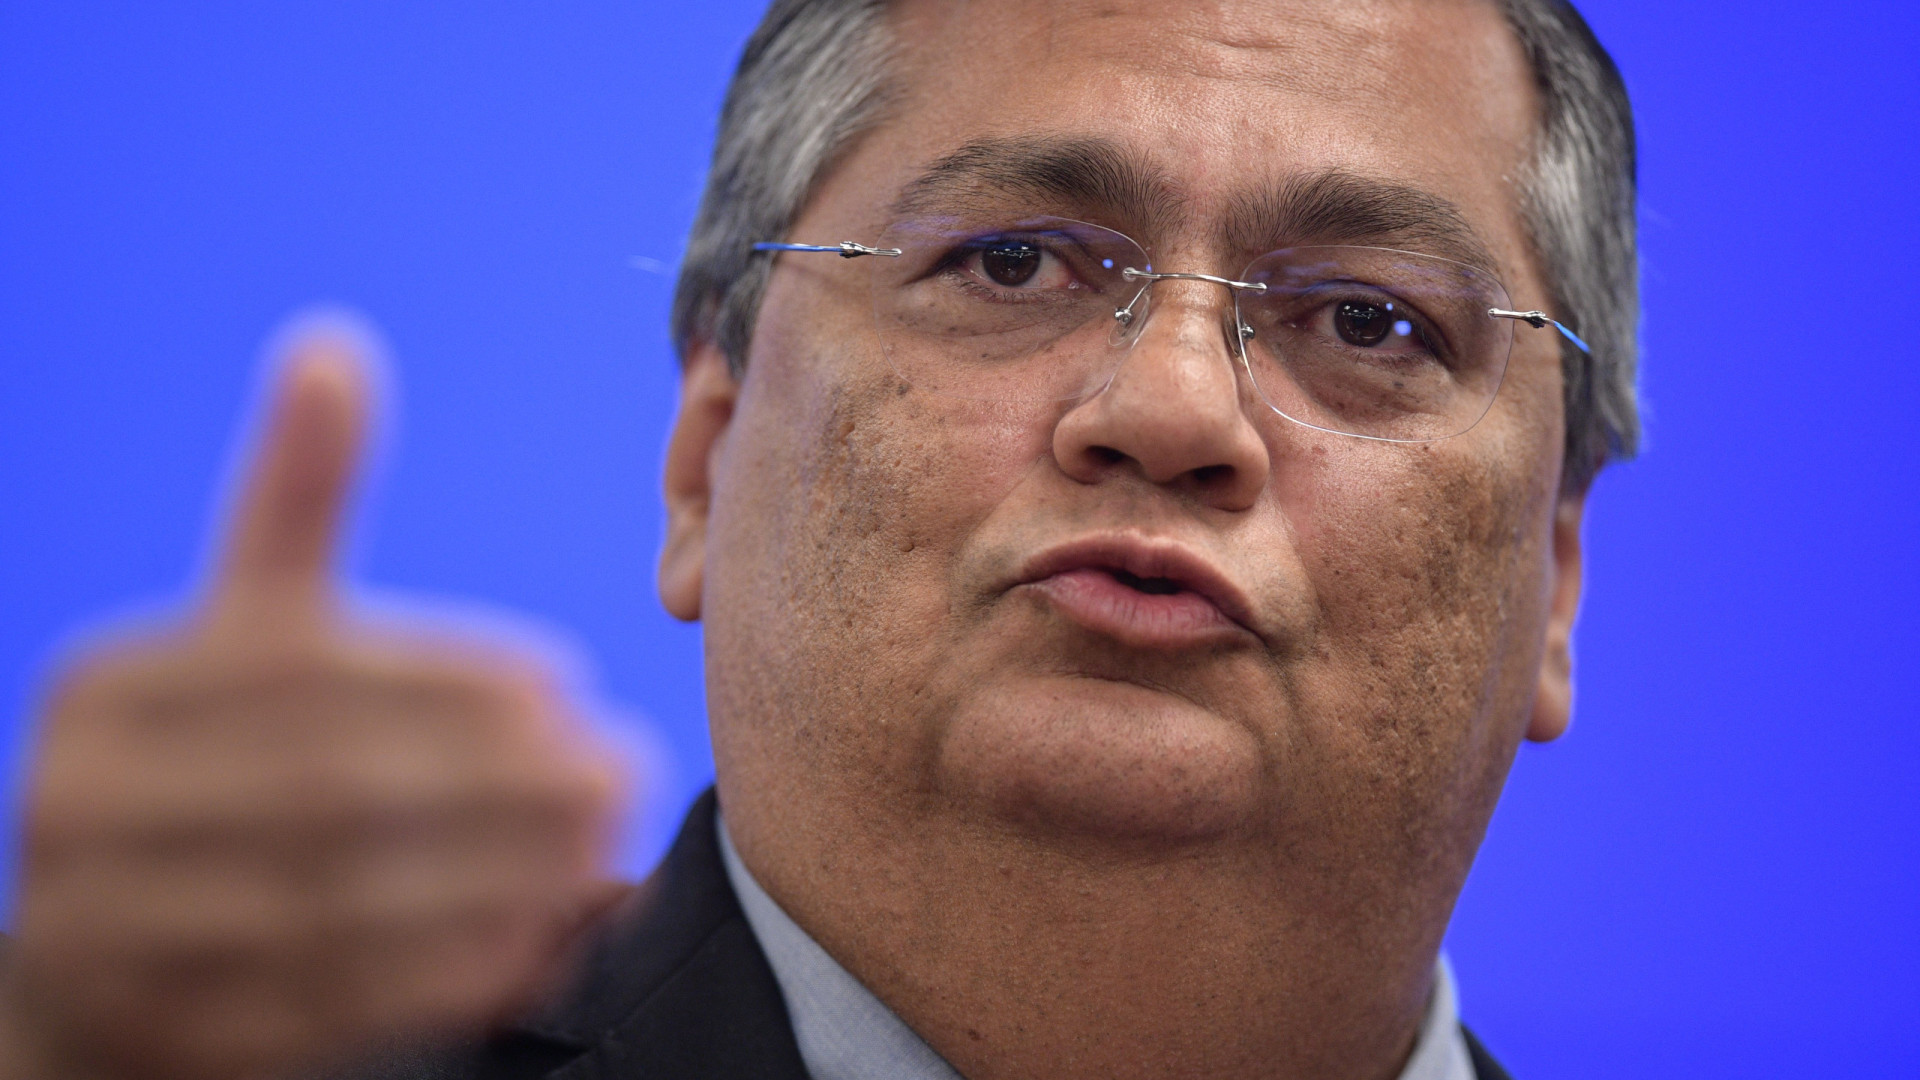 Dino critica Lava Jato para pregar cautela em apuração sobre hostilidade a Moraes